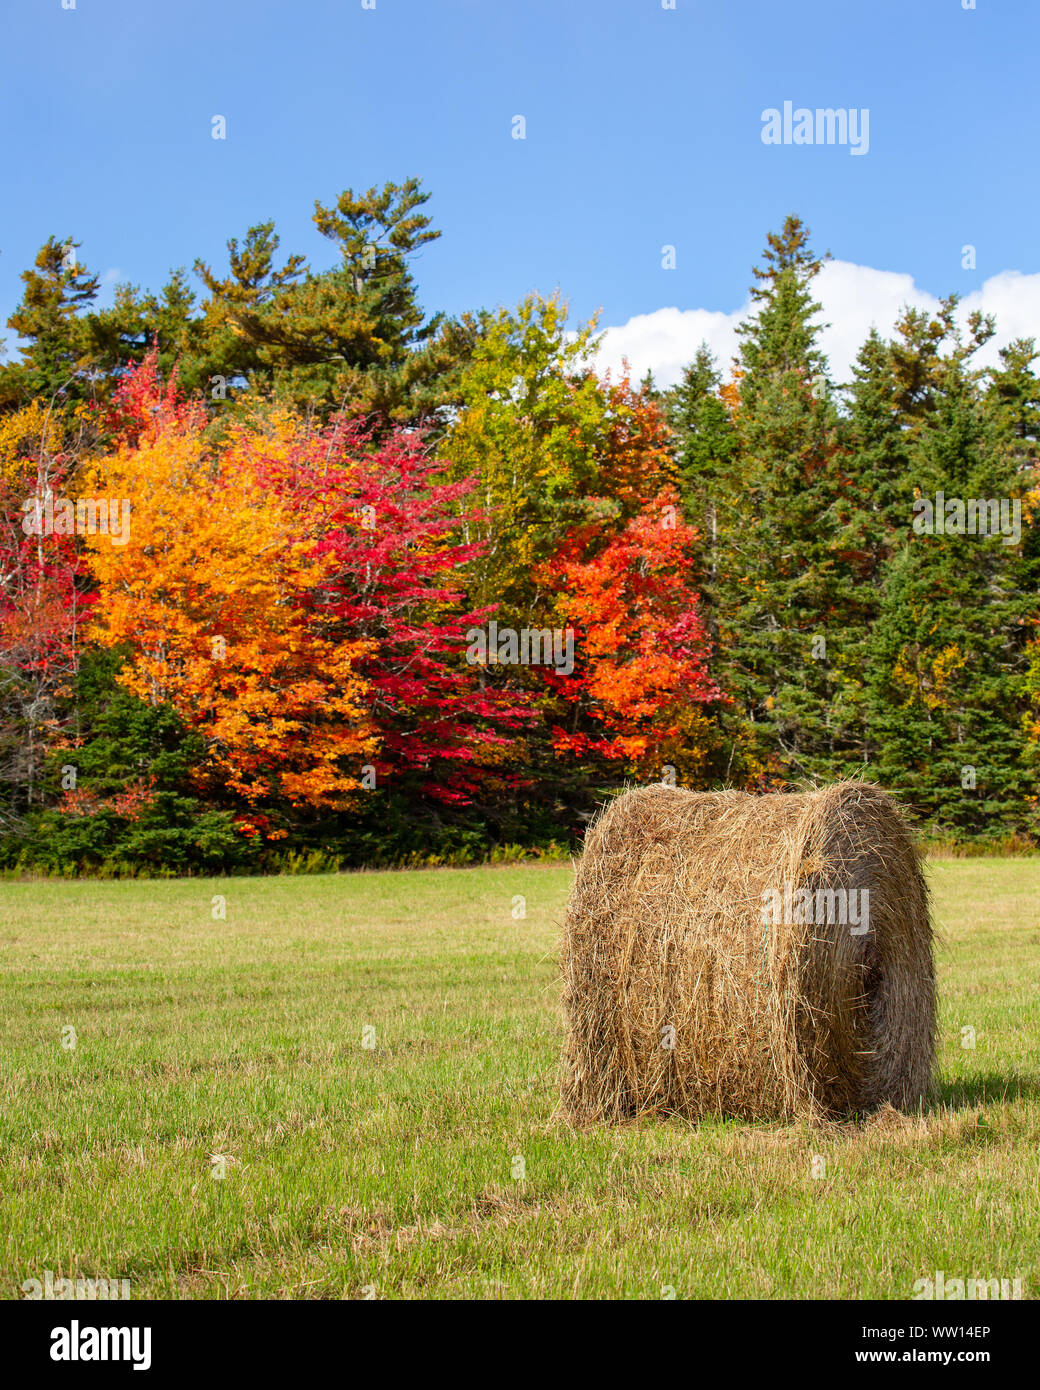 Balles de foin dans un champ agricole entouré de feuillage d'automne. Banque D'Images